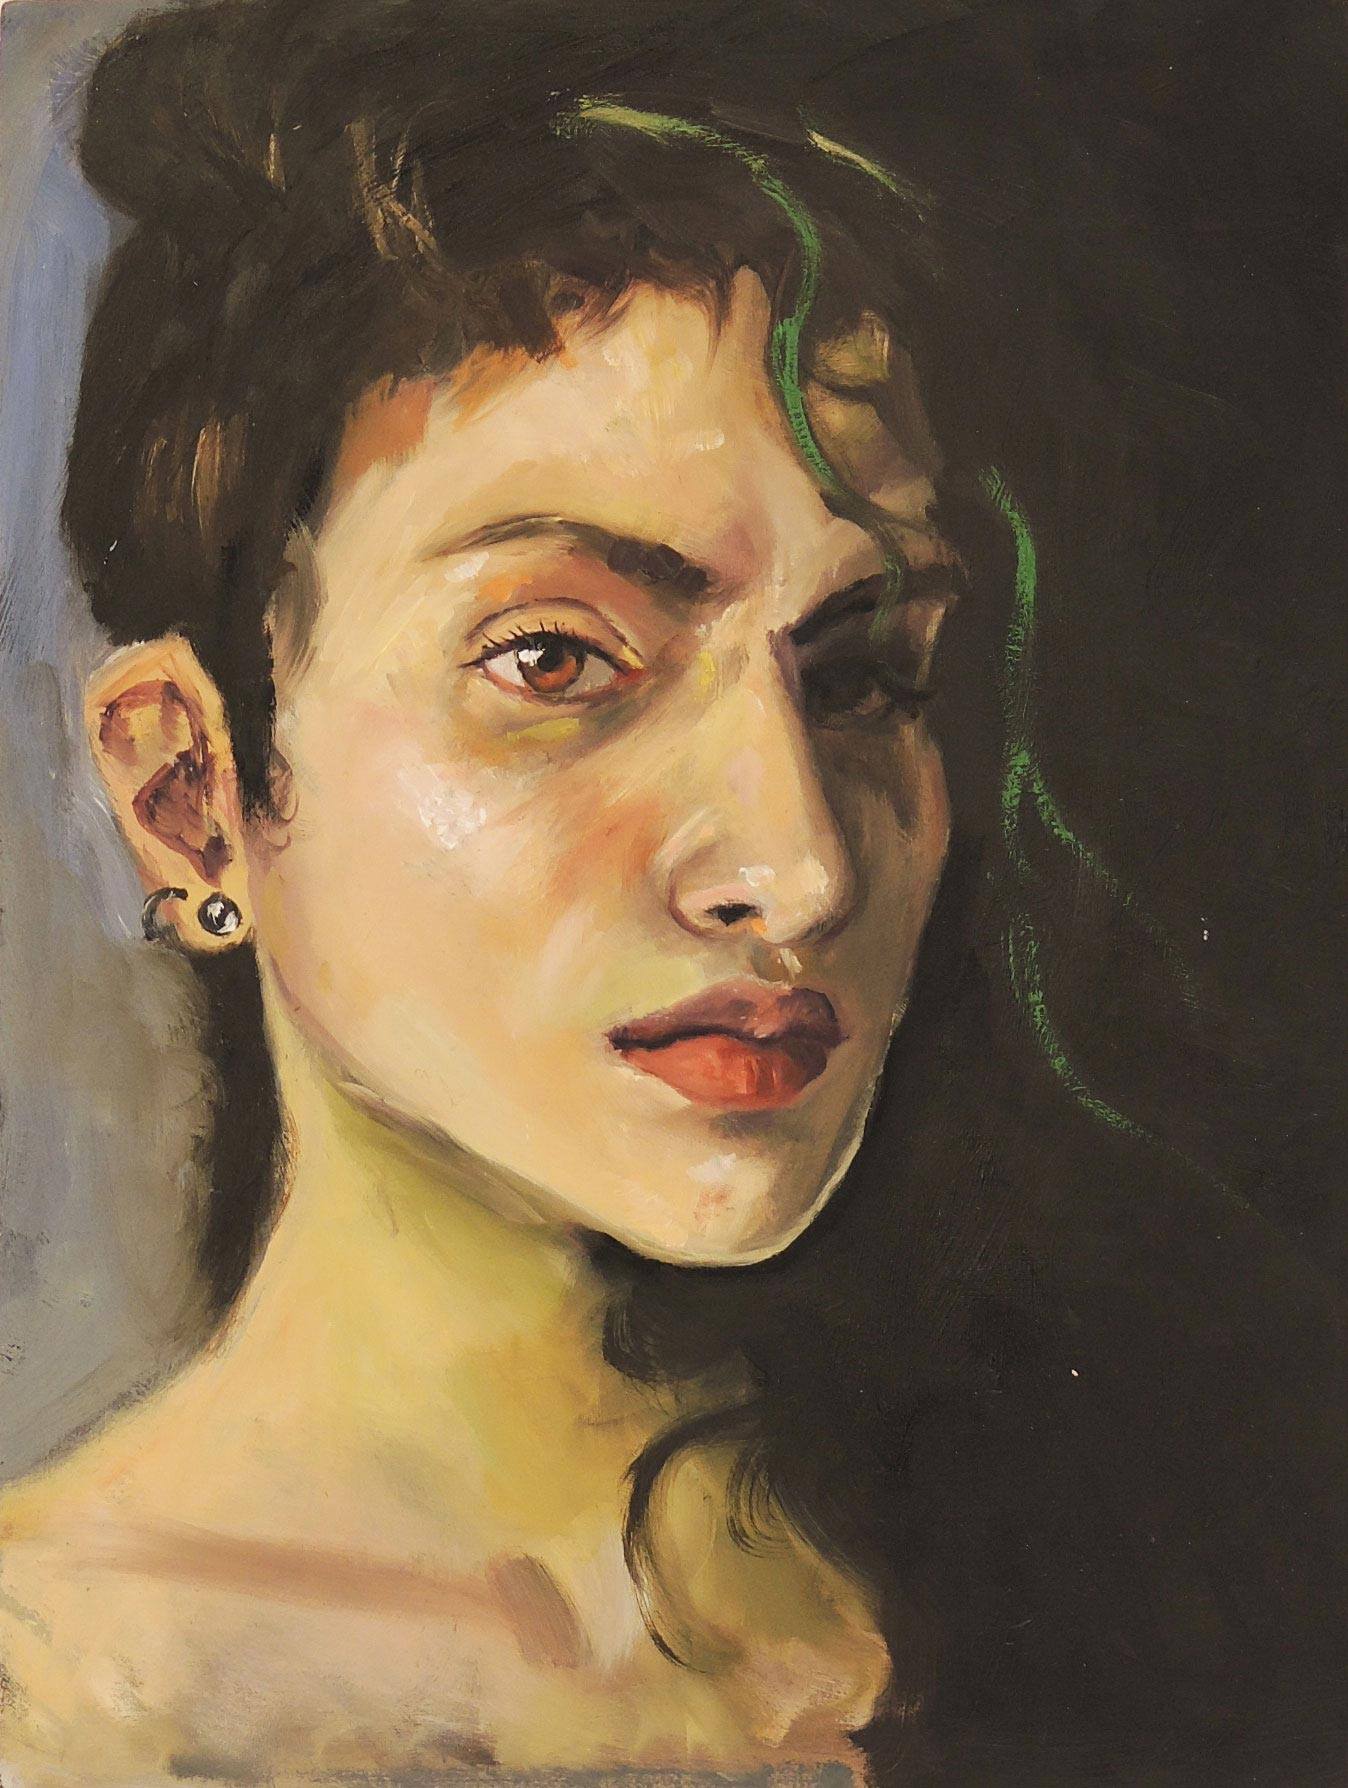 A portrait of a woman by Nina Vazquez